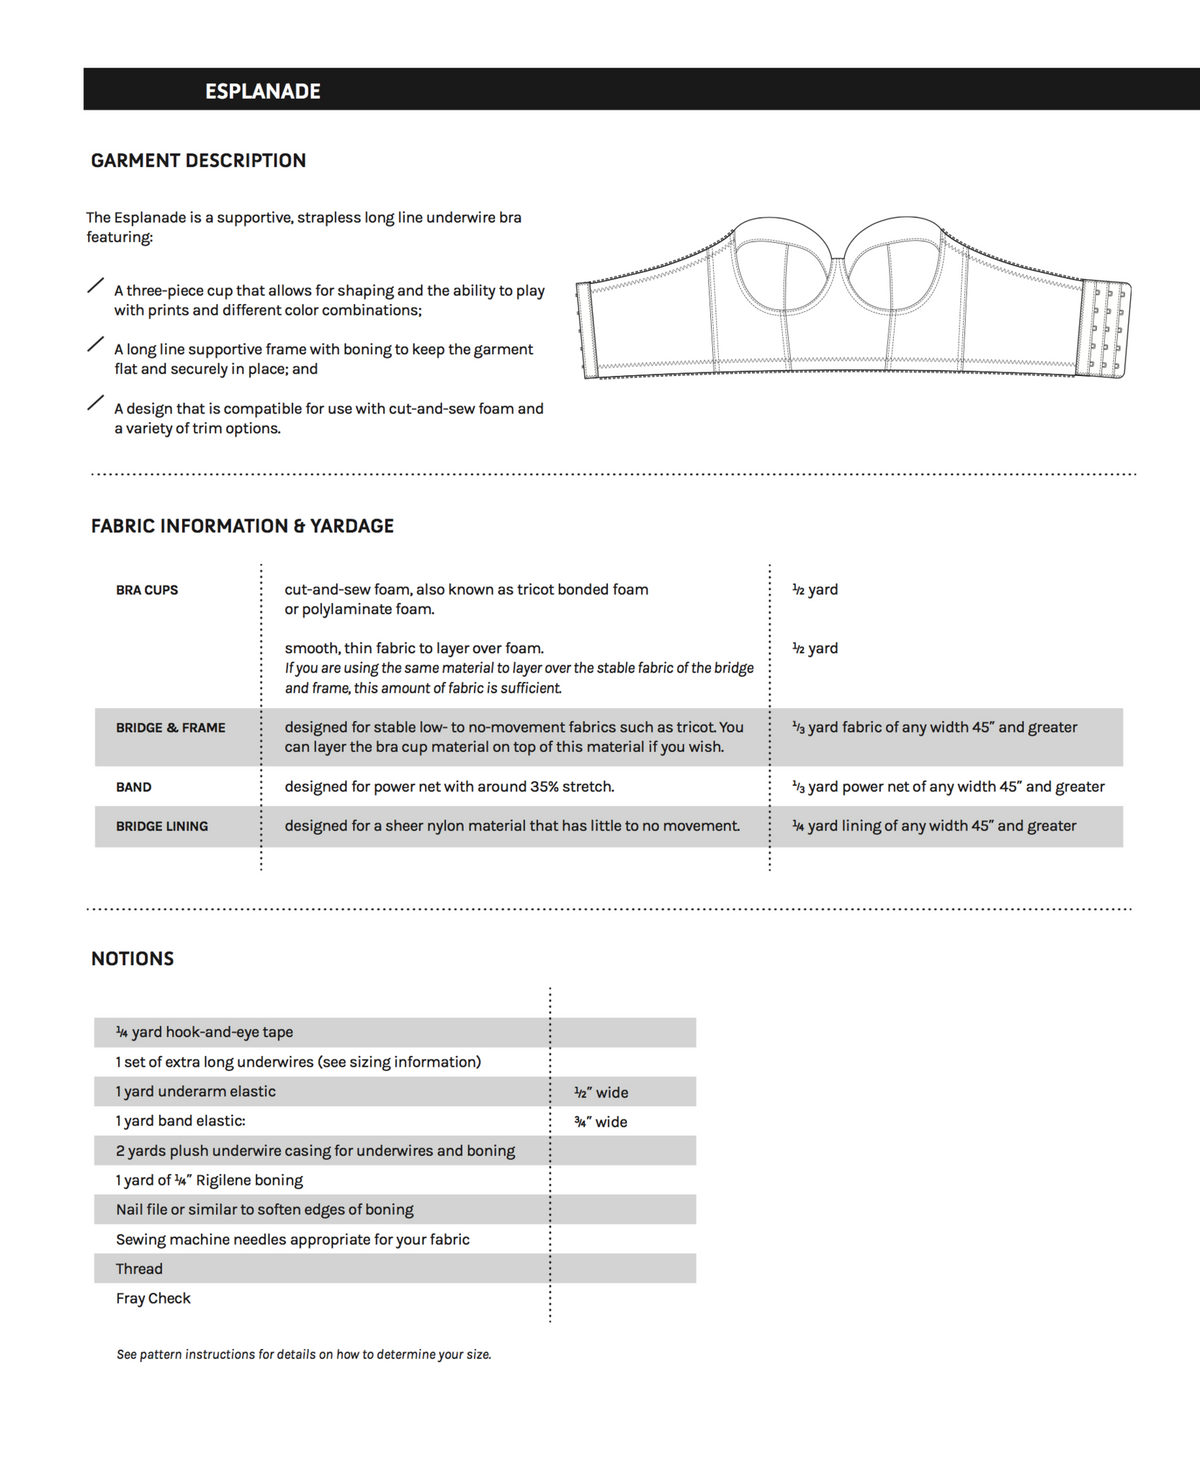 Esplanade Bra sewing pattern supplies information